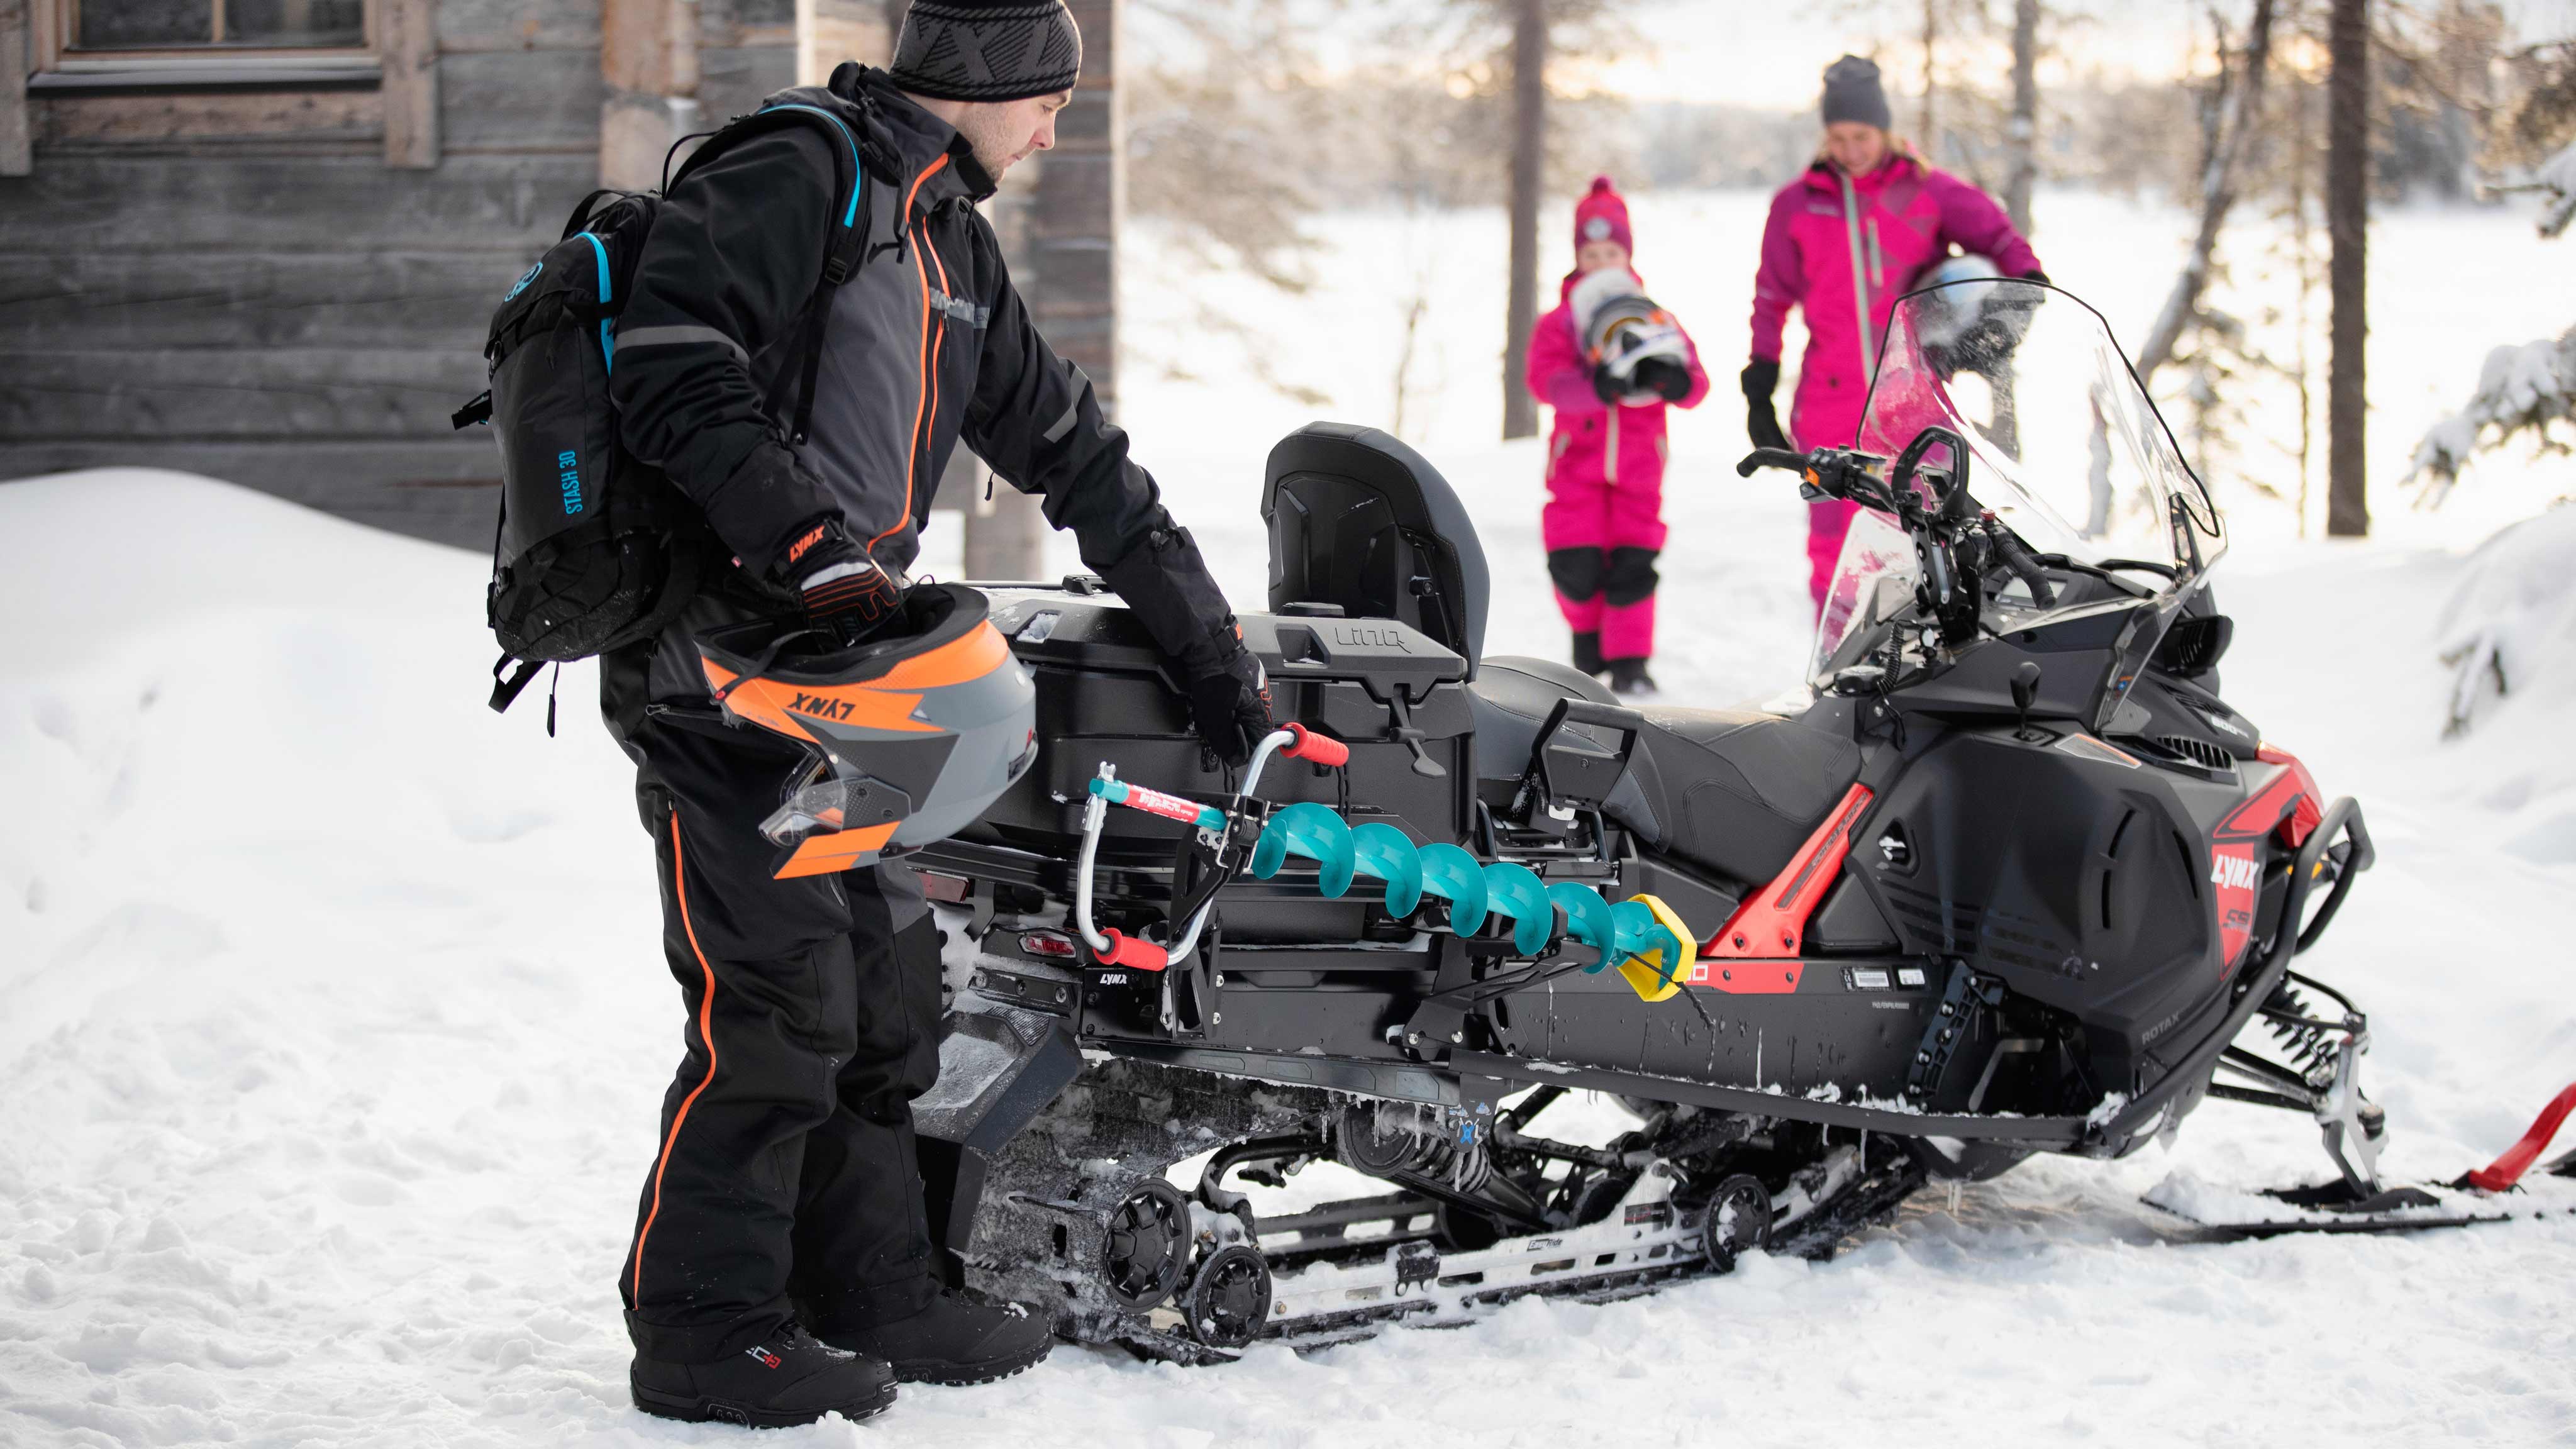 Rodina pripravujúca sa na jazdu na snežnom skútri Lynx 59 Ranger